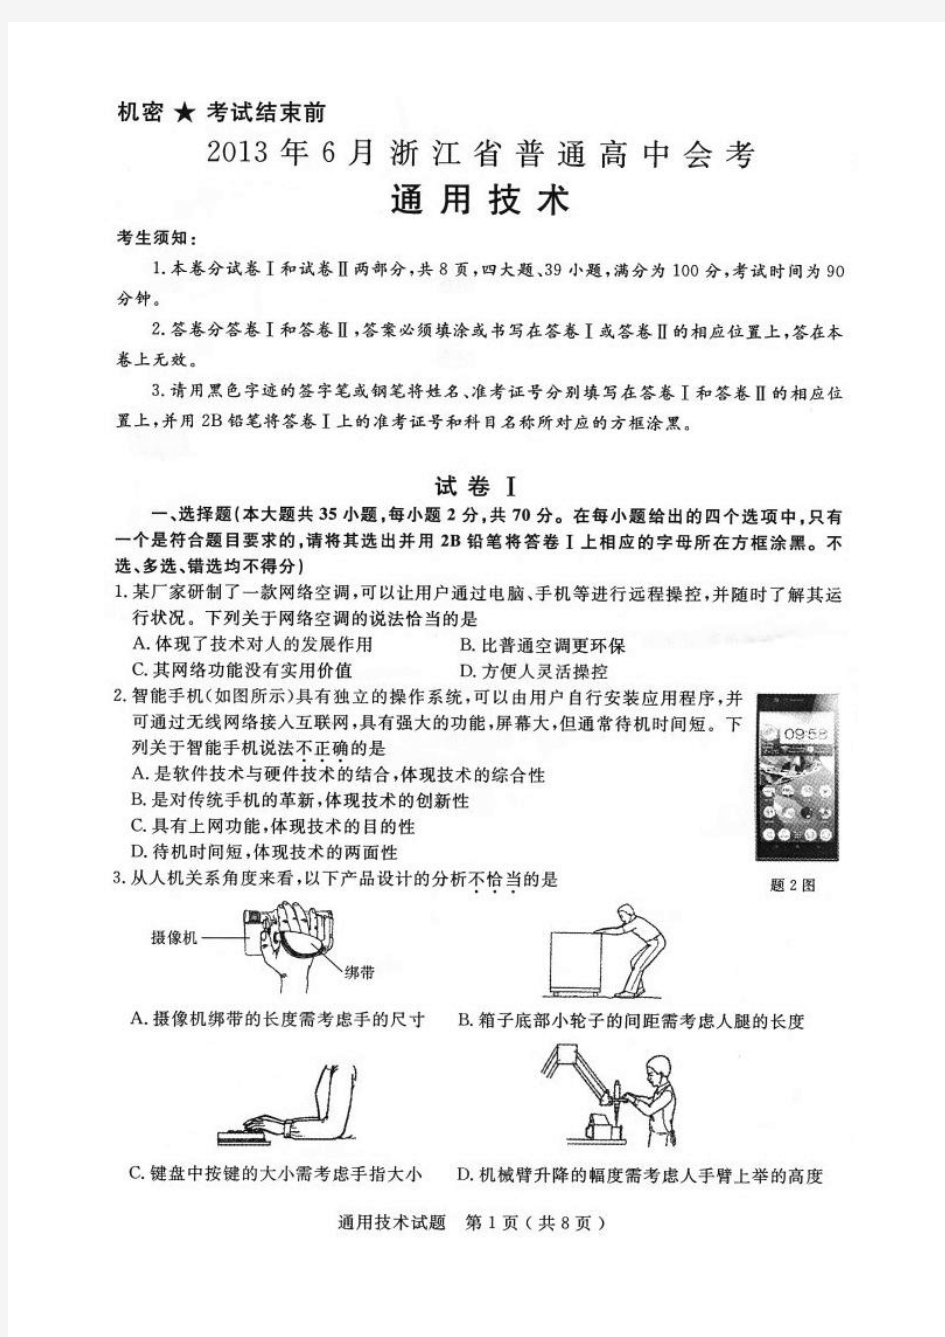 2013年浙江省通用技术会考试卷(及答案)清晰图片版